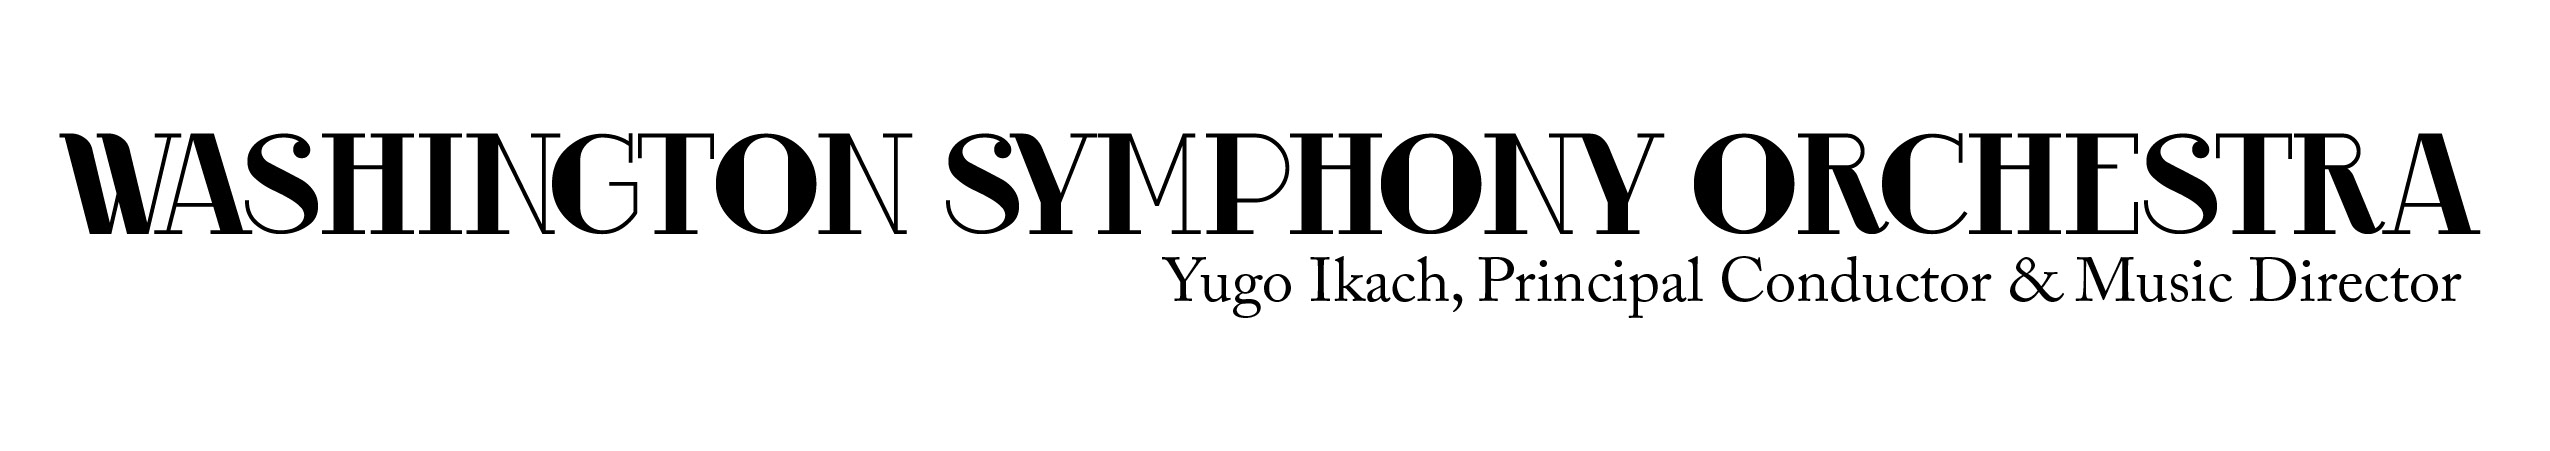 Washington Symphony Orchestra